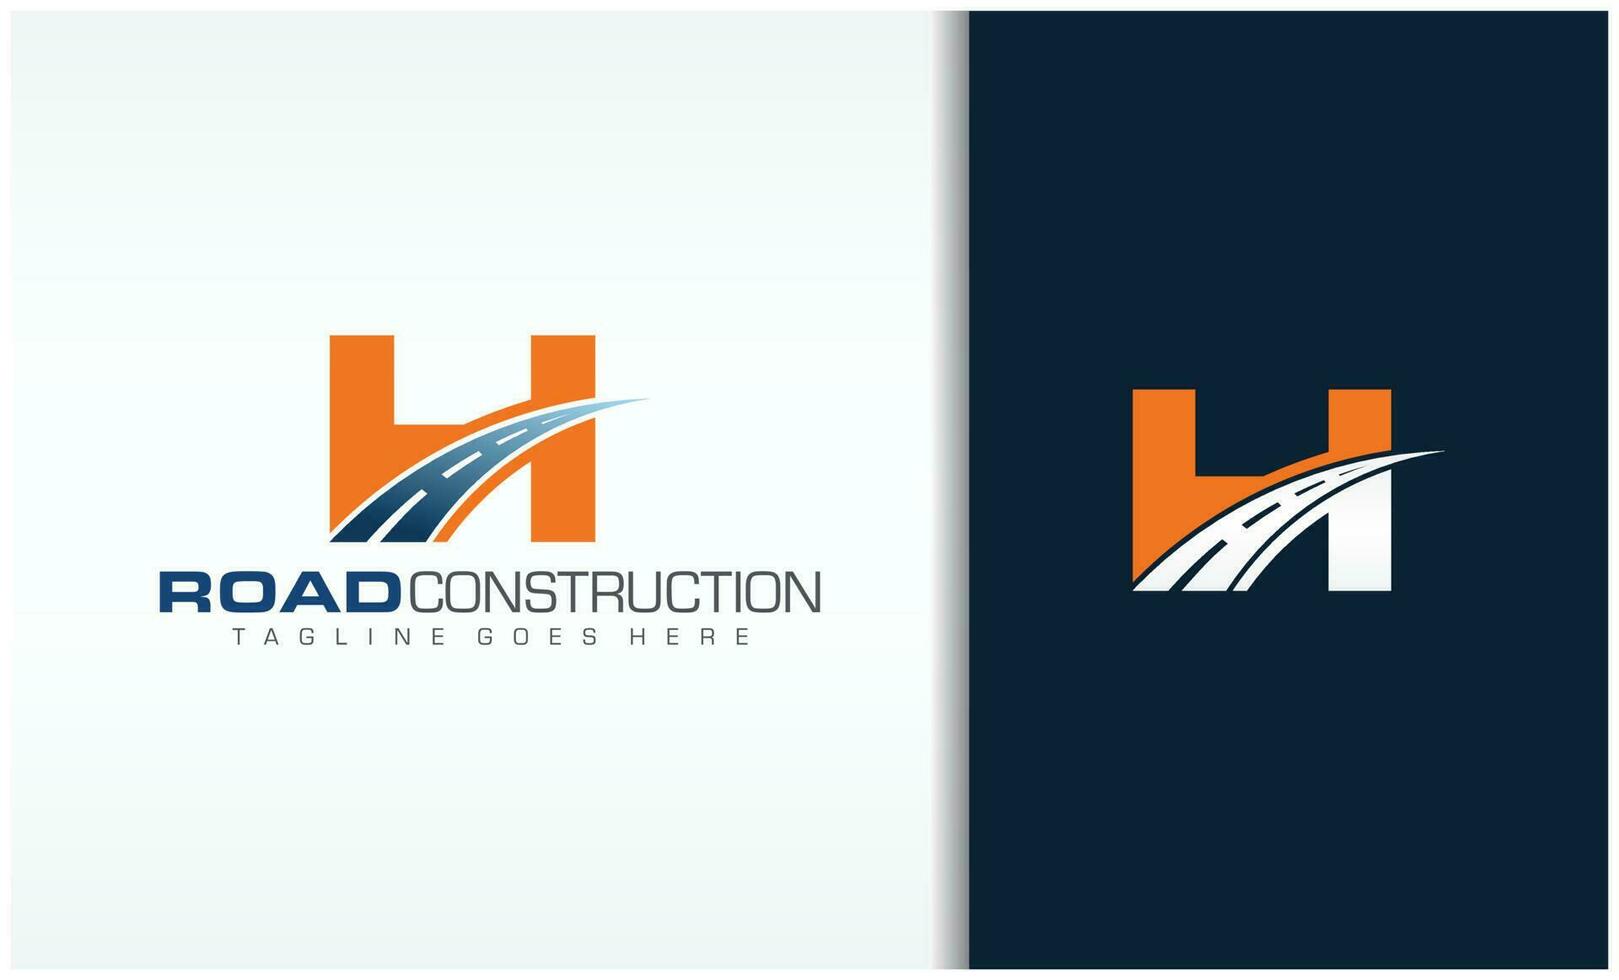 Brief h mit Straße Logo singen das kreativ Design Konzept zum Autobahn Instandhaltung und Konstruktion vektor